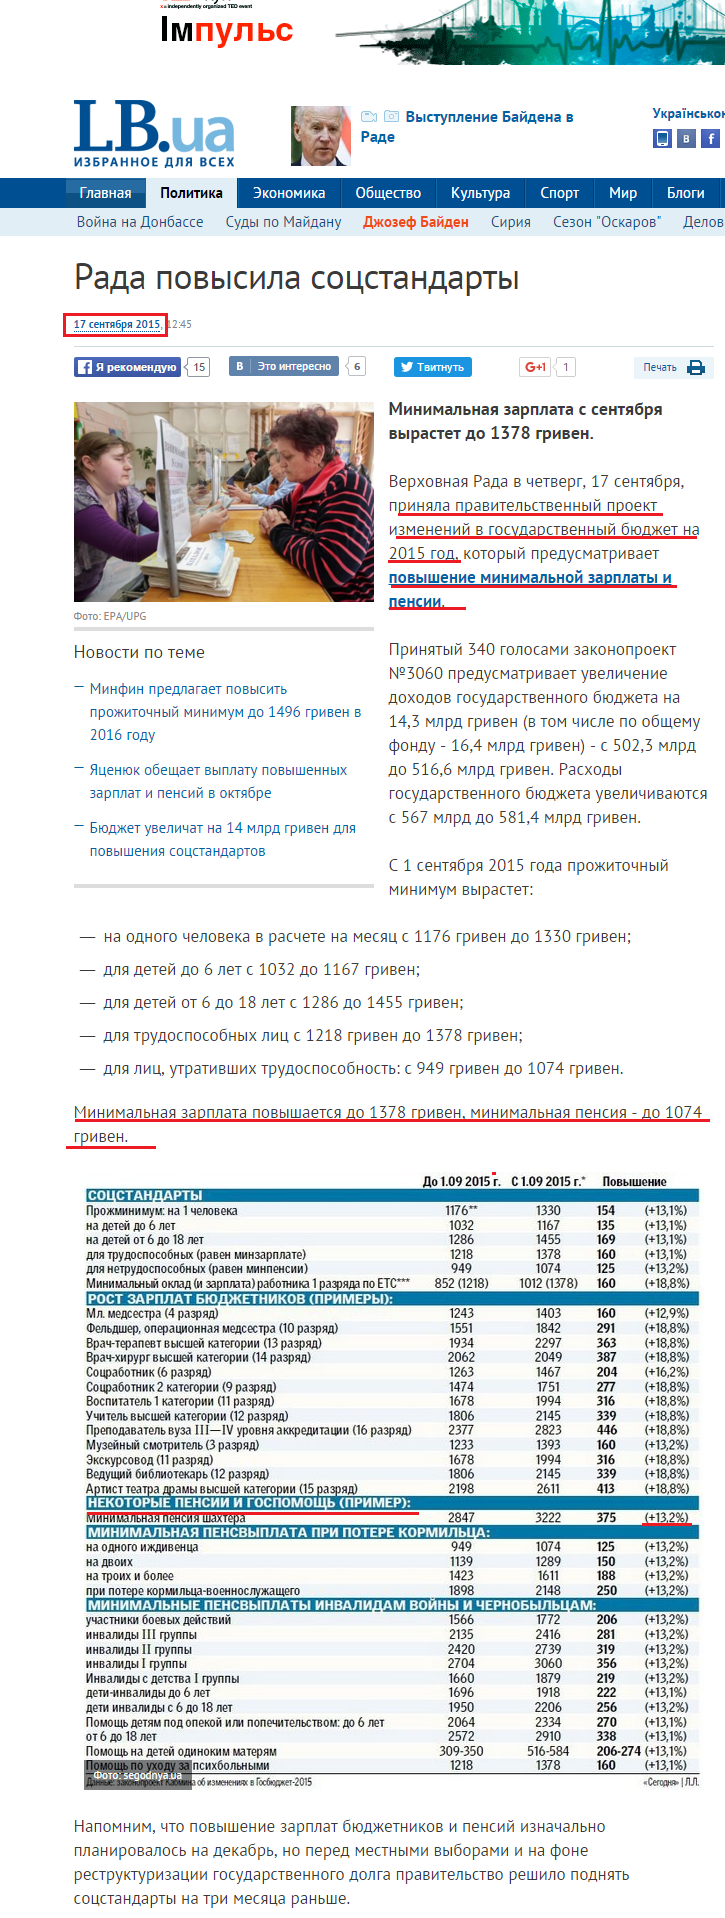 http://lb.ua/news/2015/09/17/316217_rada_povisila_sotsstandarti.html